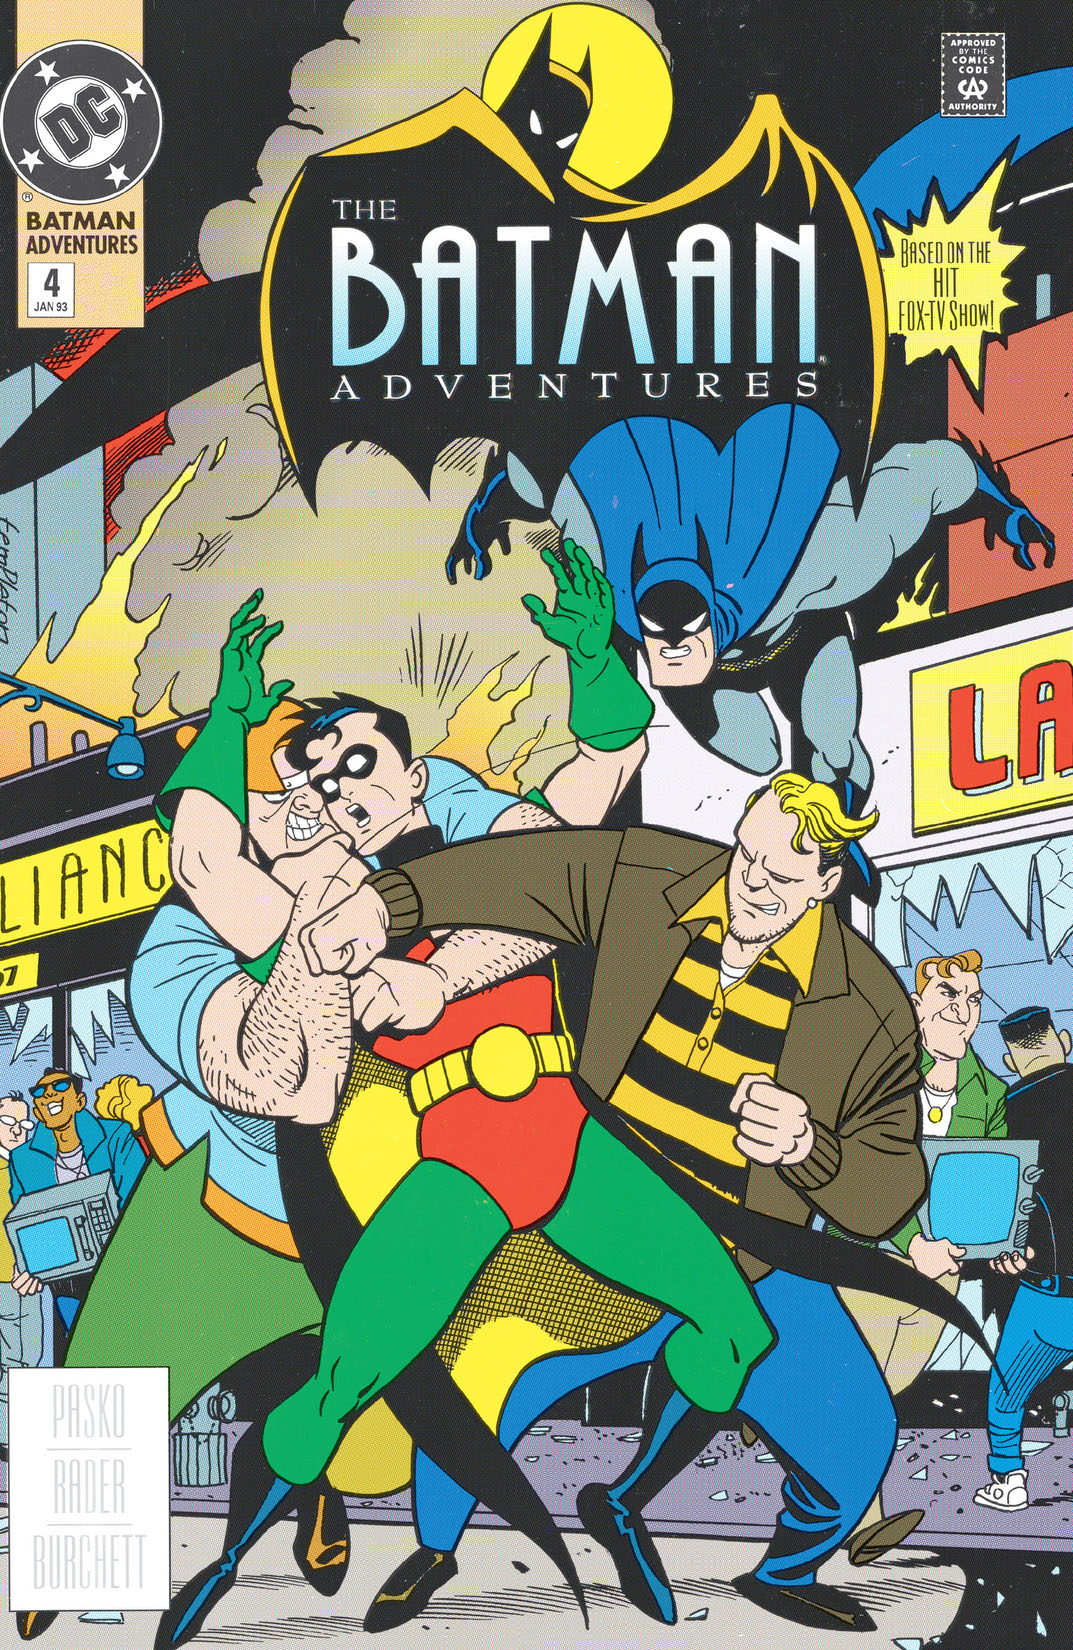 The Batman Adventures #4 preview images